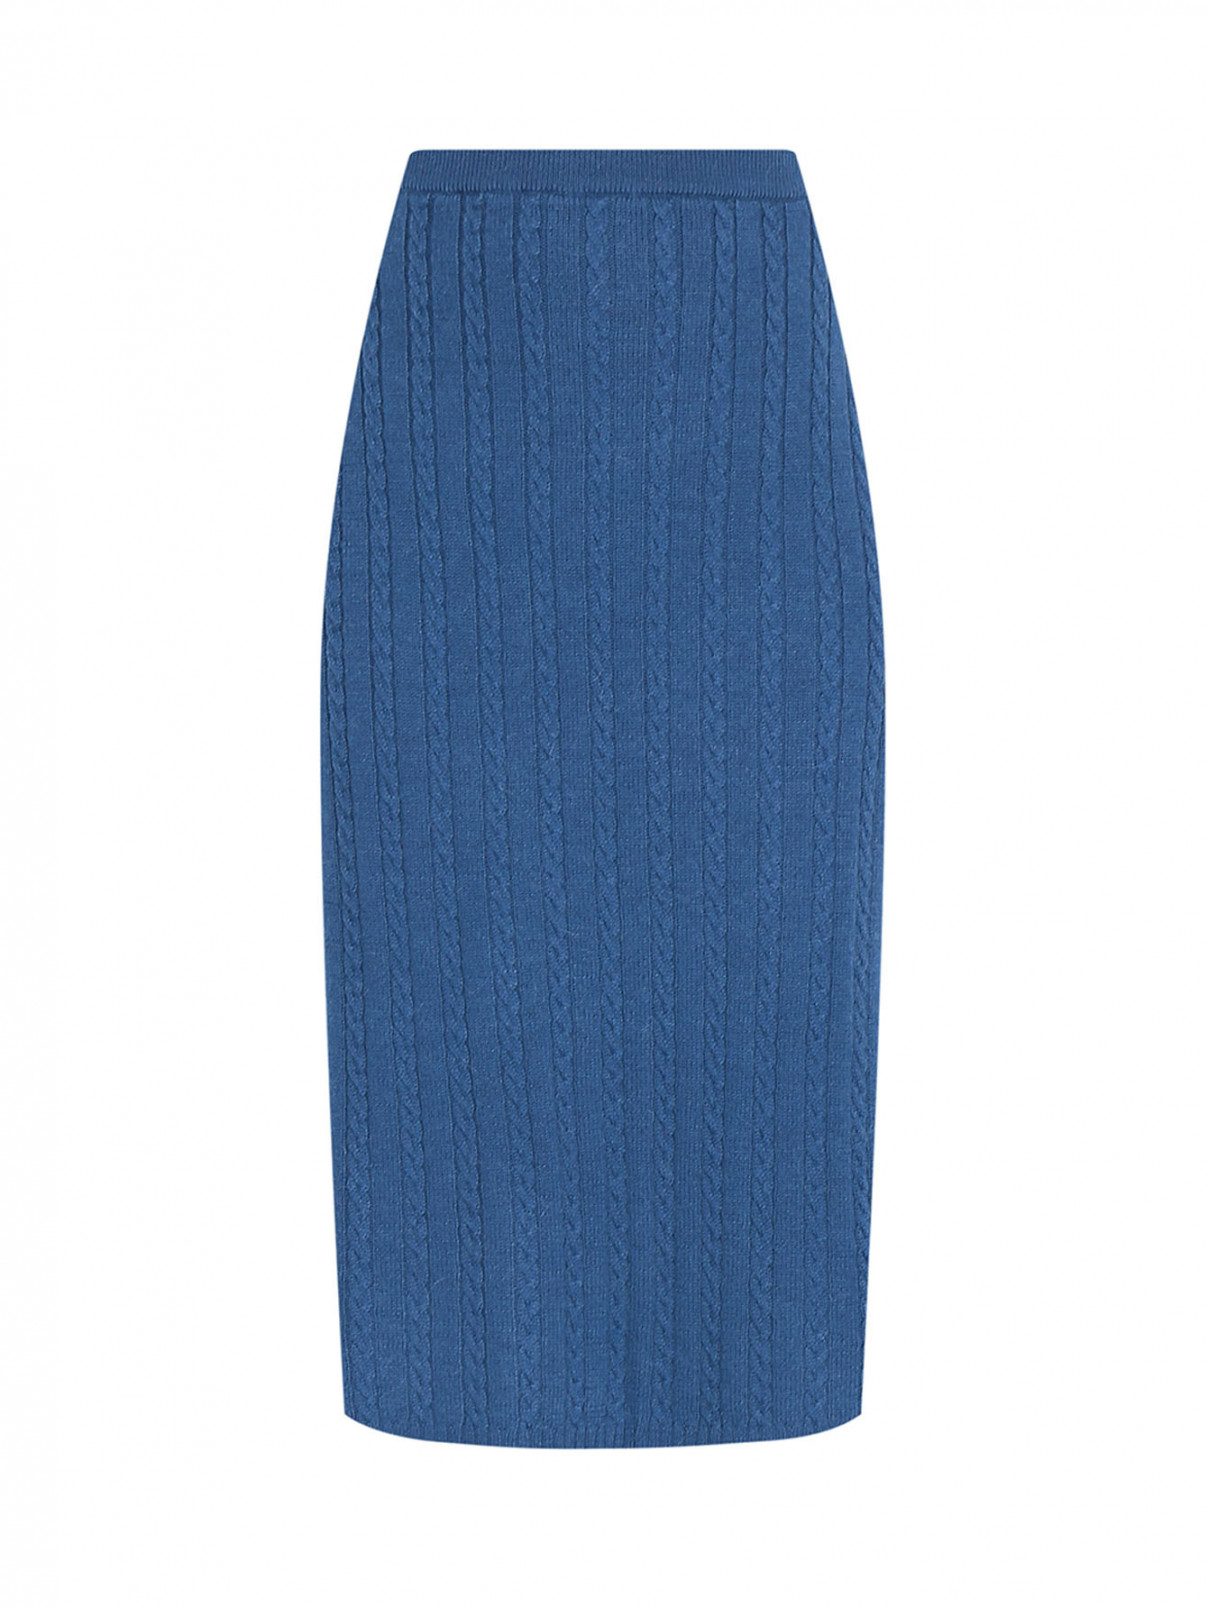 Трикотажная юбка из смешанной шерсти на резинке Marina Rinaldi  –  Общий вид  – Цвет:  Синий